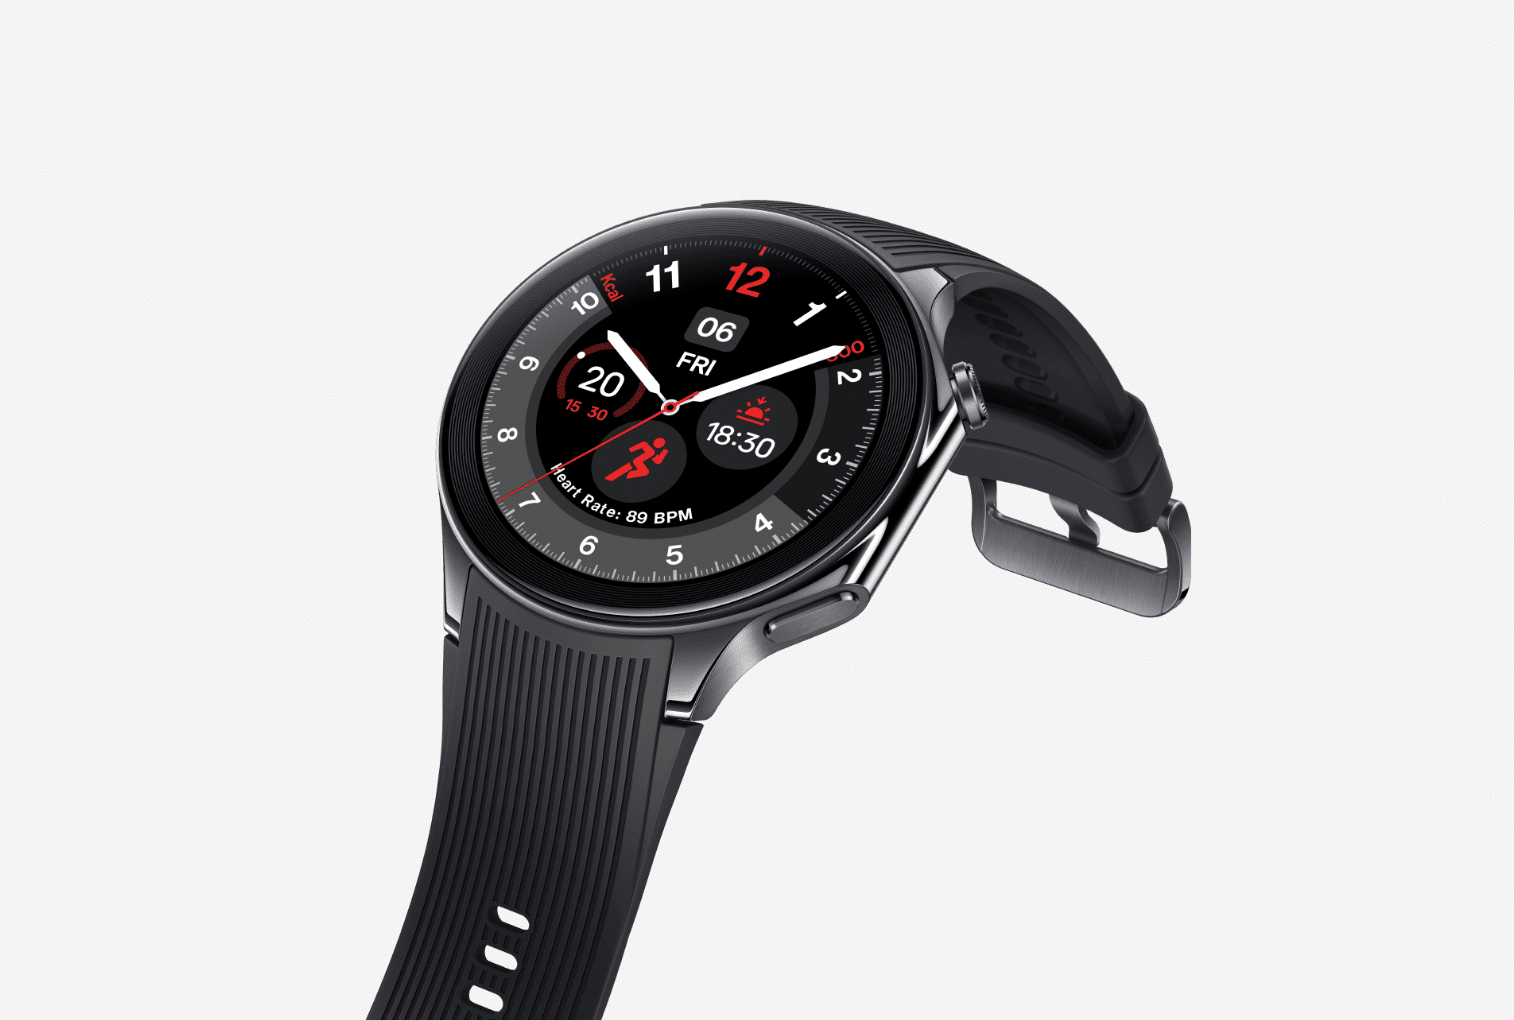 Produktbild der OnePlus Watch 2